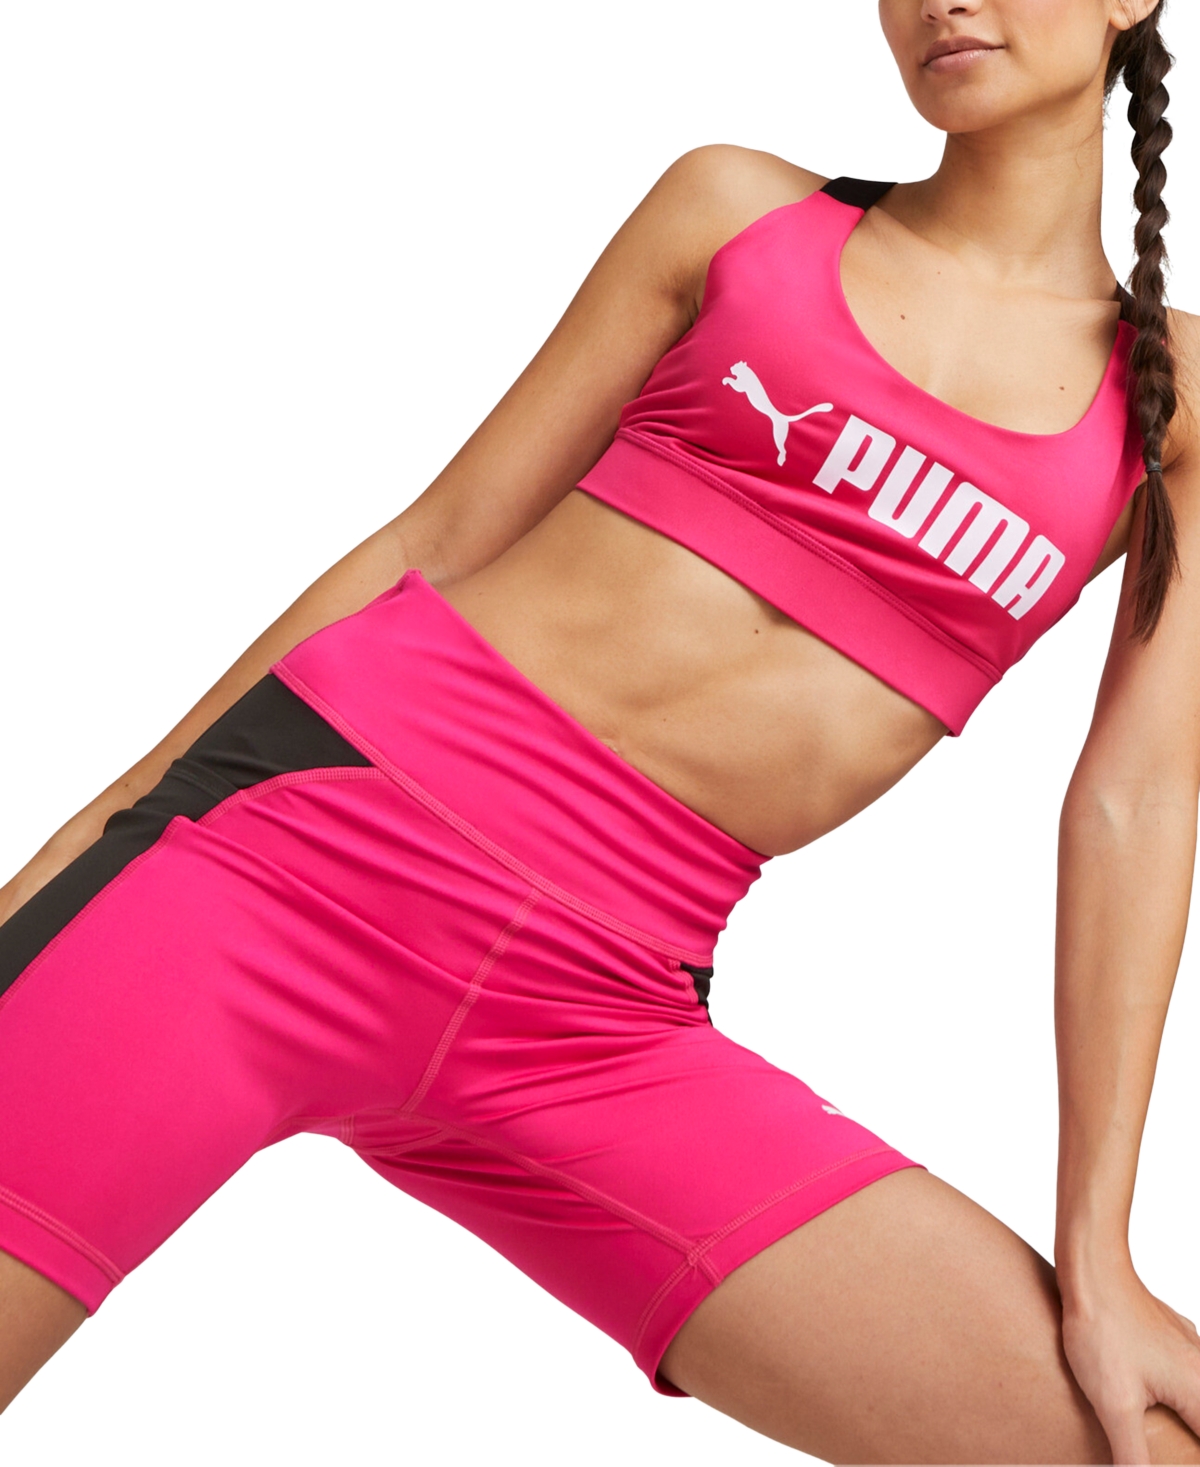 Puma - Studio Granola light support strappy sports bra in muted